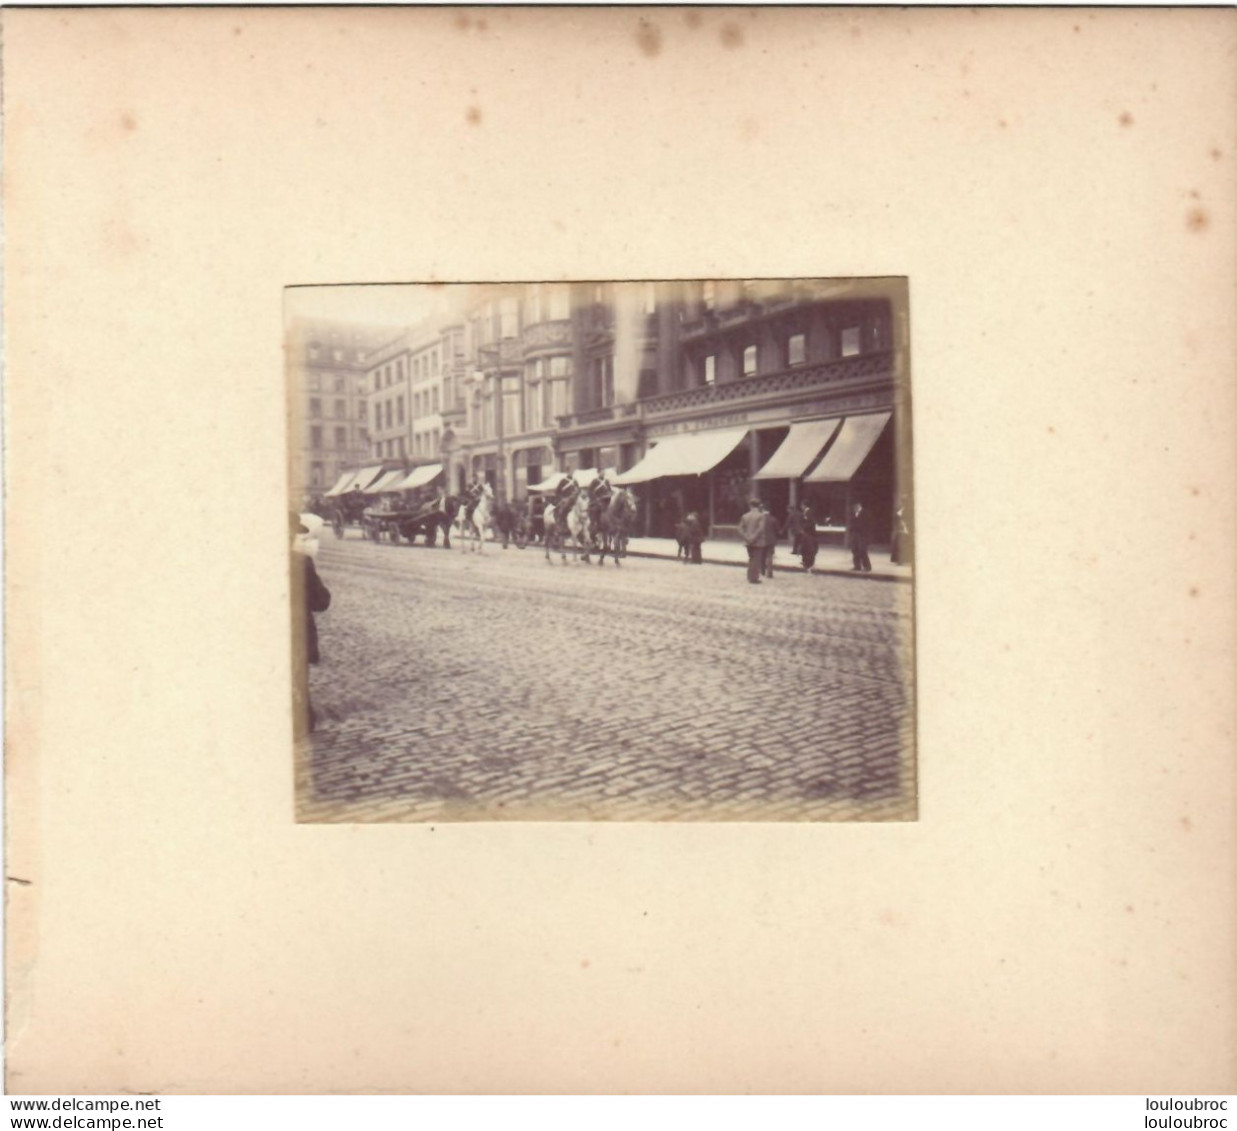 EDIMBOURG PRINCES STREET CAVALERIE FIN 19e PHOTO ORIGINALE SUR CARTON 16 X 14 CM FORMAT PHOTO 8.50 X 7 CM R1 - Old (before 1900)